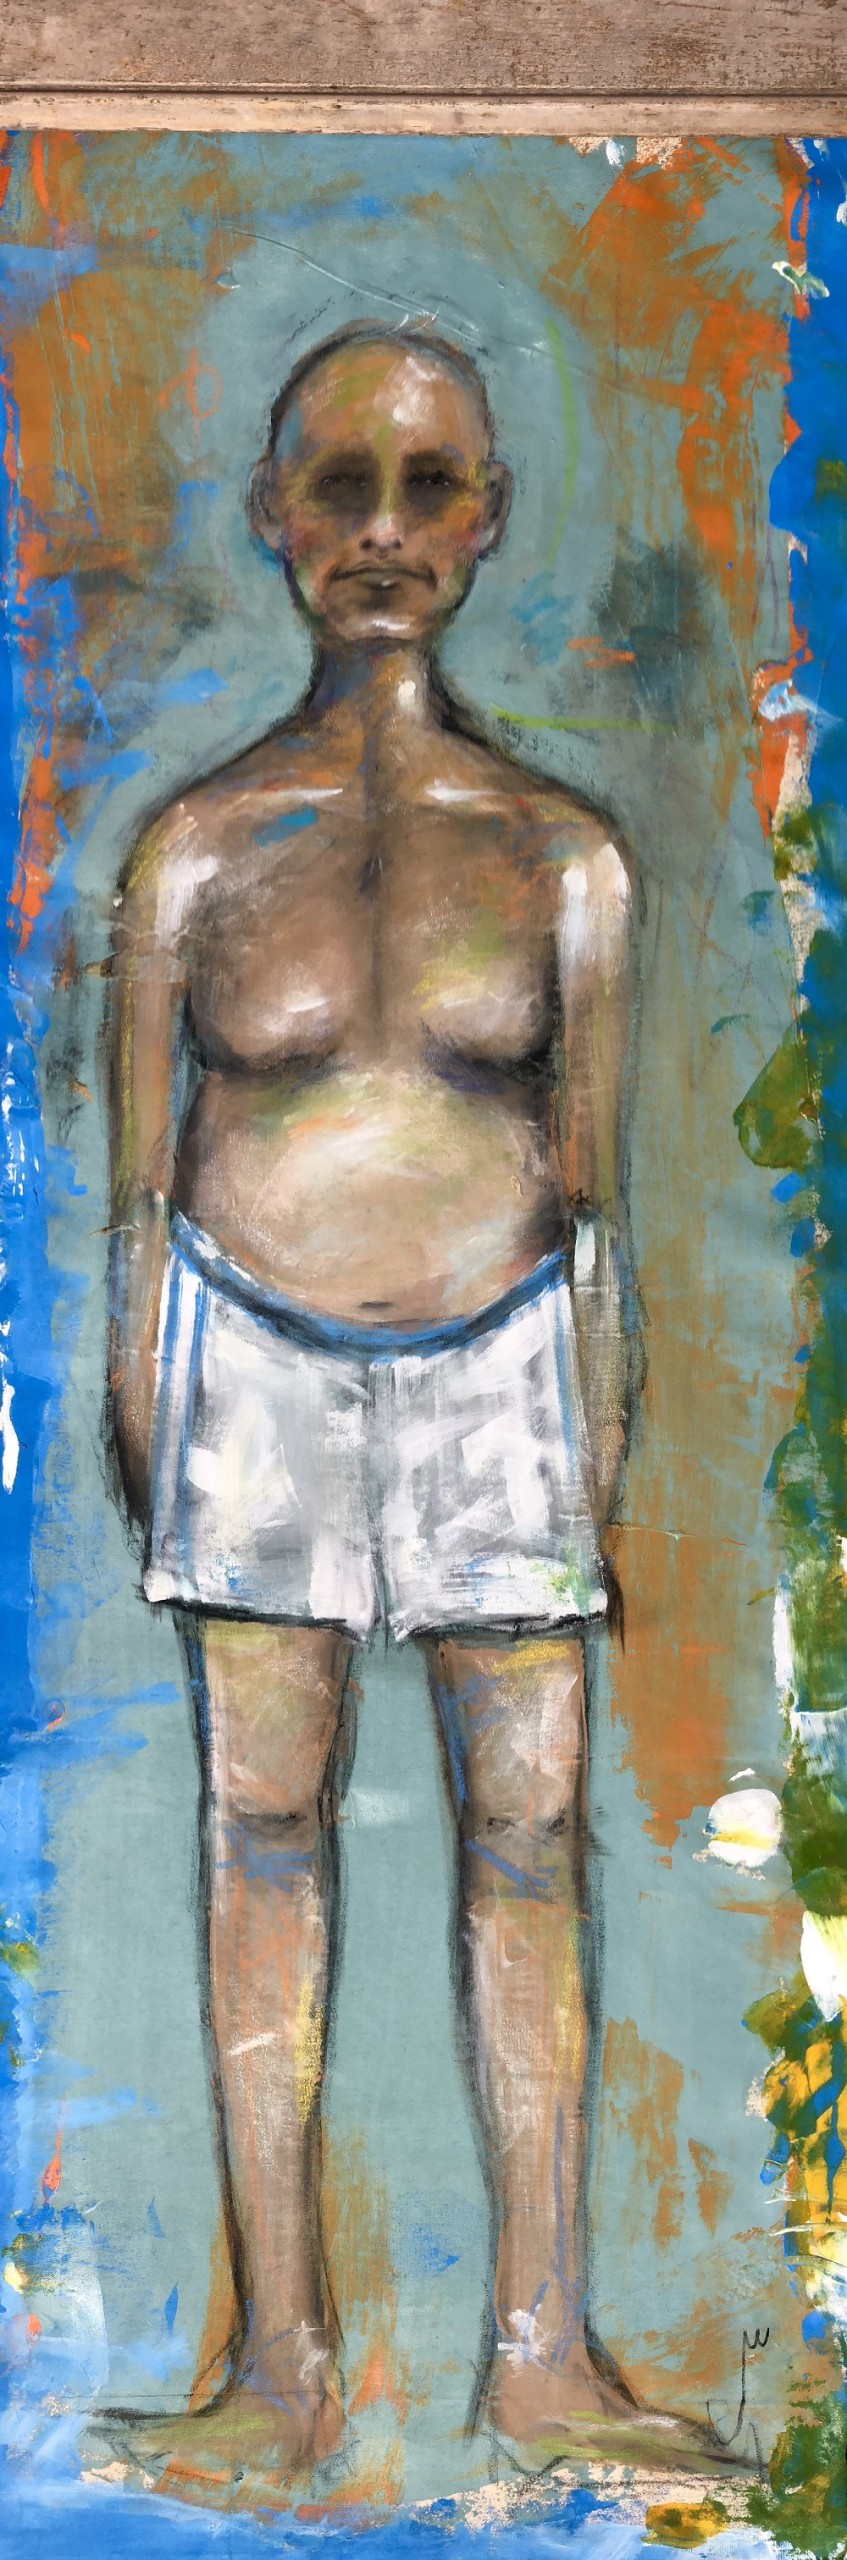 Jocelyn K Woodson, “Male Swimmer”, Acrylic on canvas